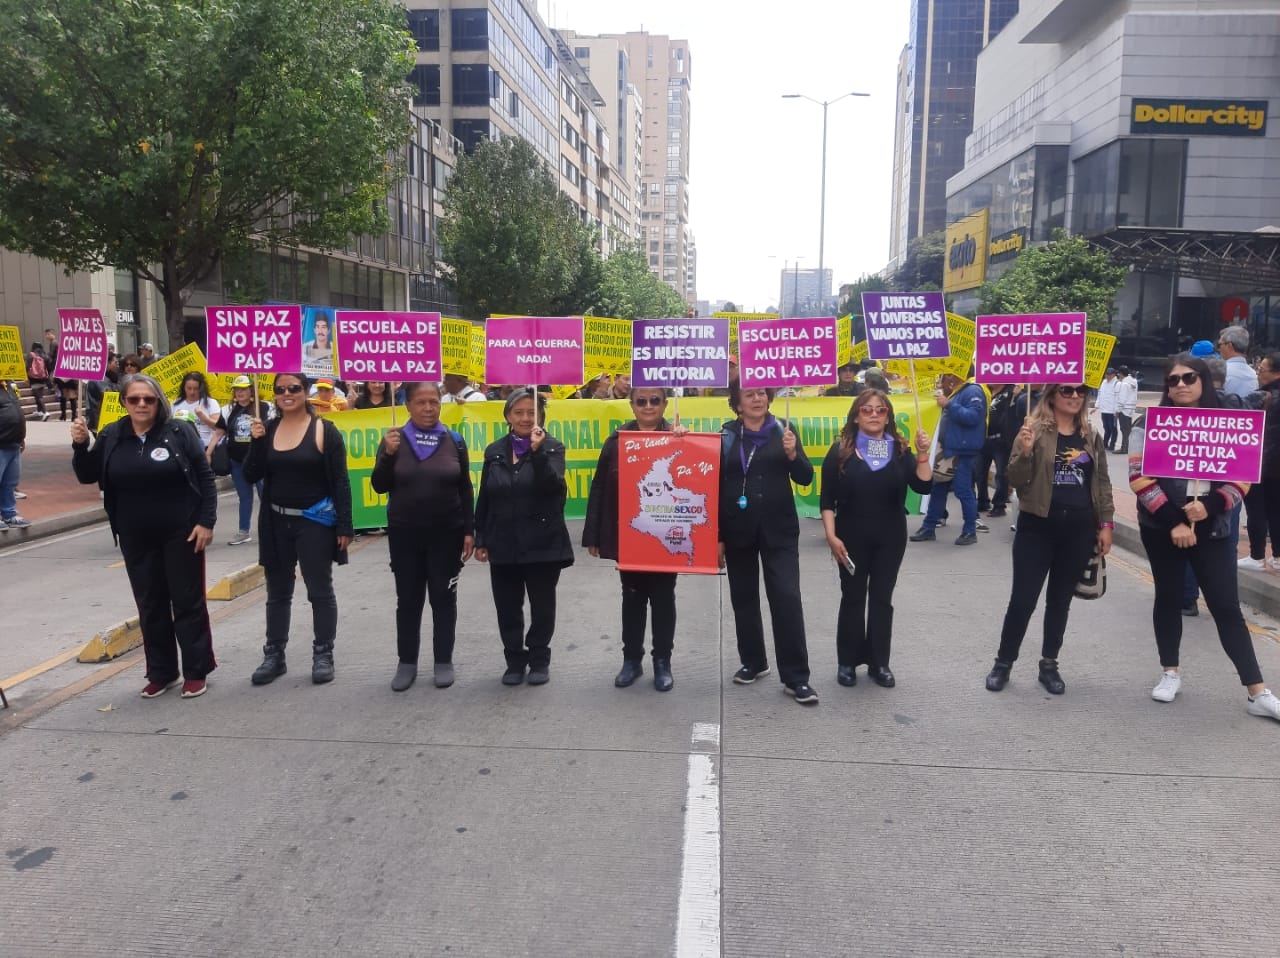 Organización de trabajadoras sexuales, Asmubuli, en una marcha por la paz. Fidelia en el centro sosteniendo un cartel rojo.|||